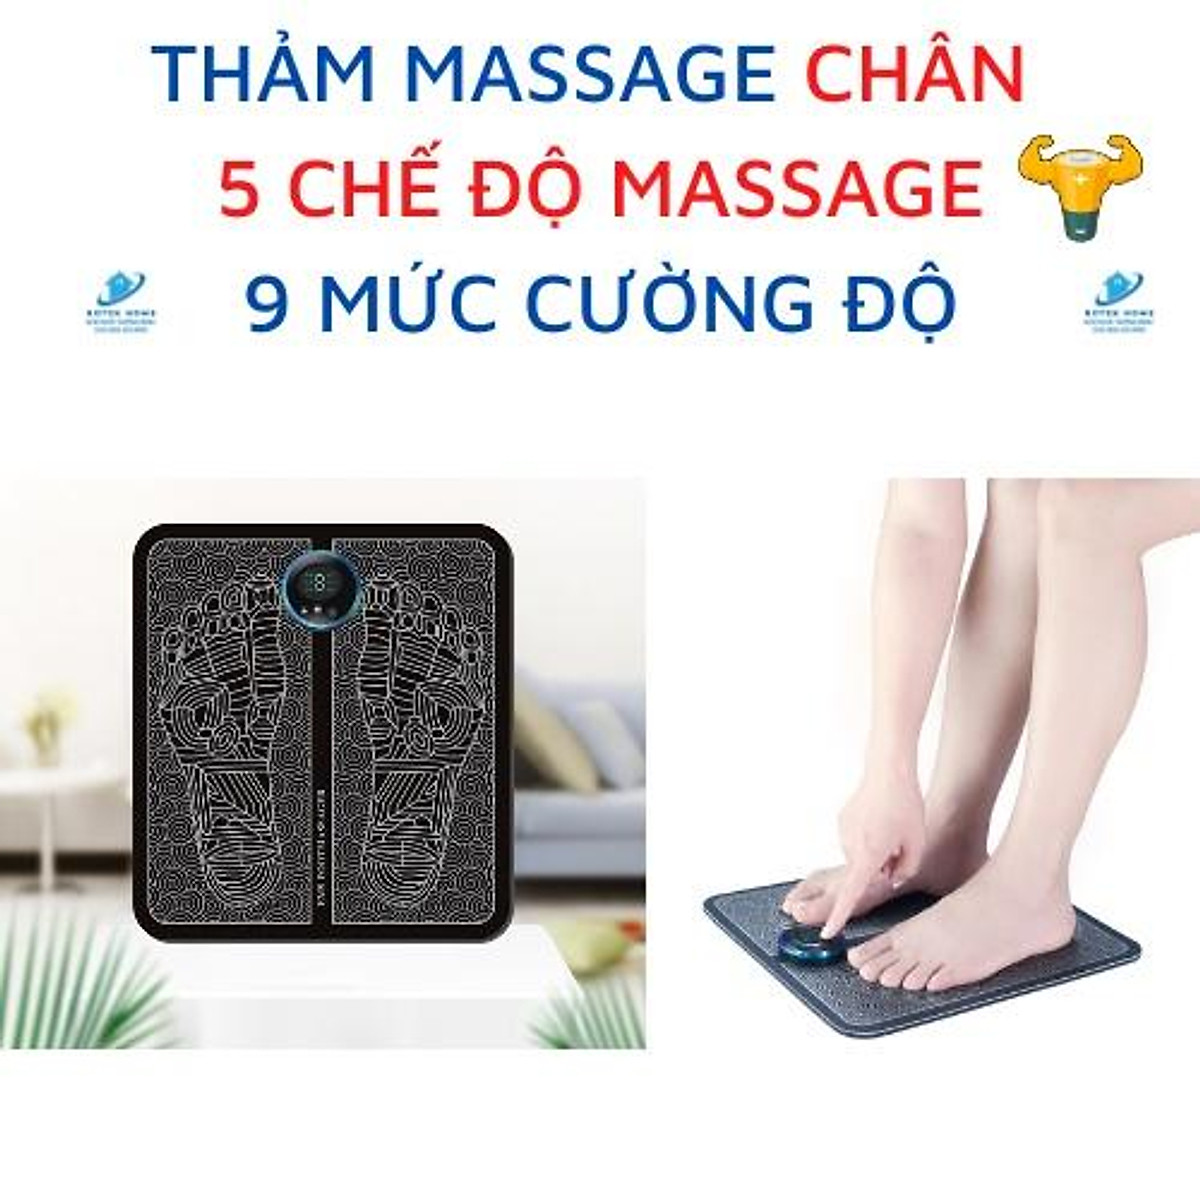 Thảm massage chân thư giãn trị liệu nhức mỏi chân, mát xa công nghệ xung điện màn hình kỹ thuật số, pin sạc